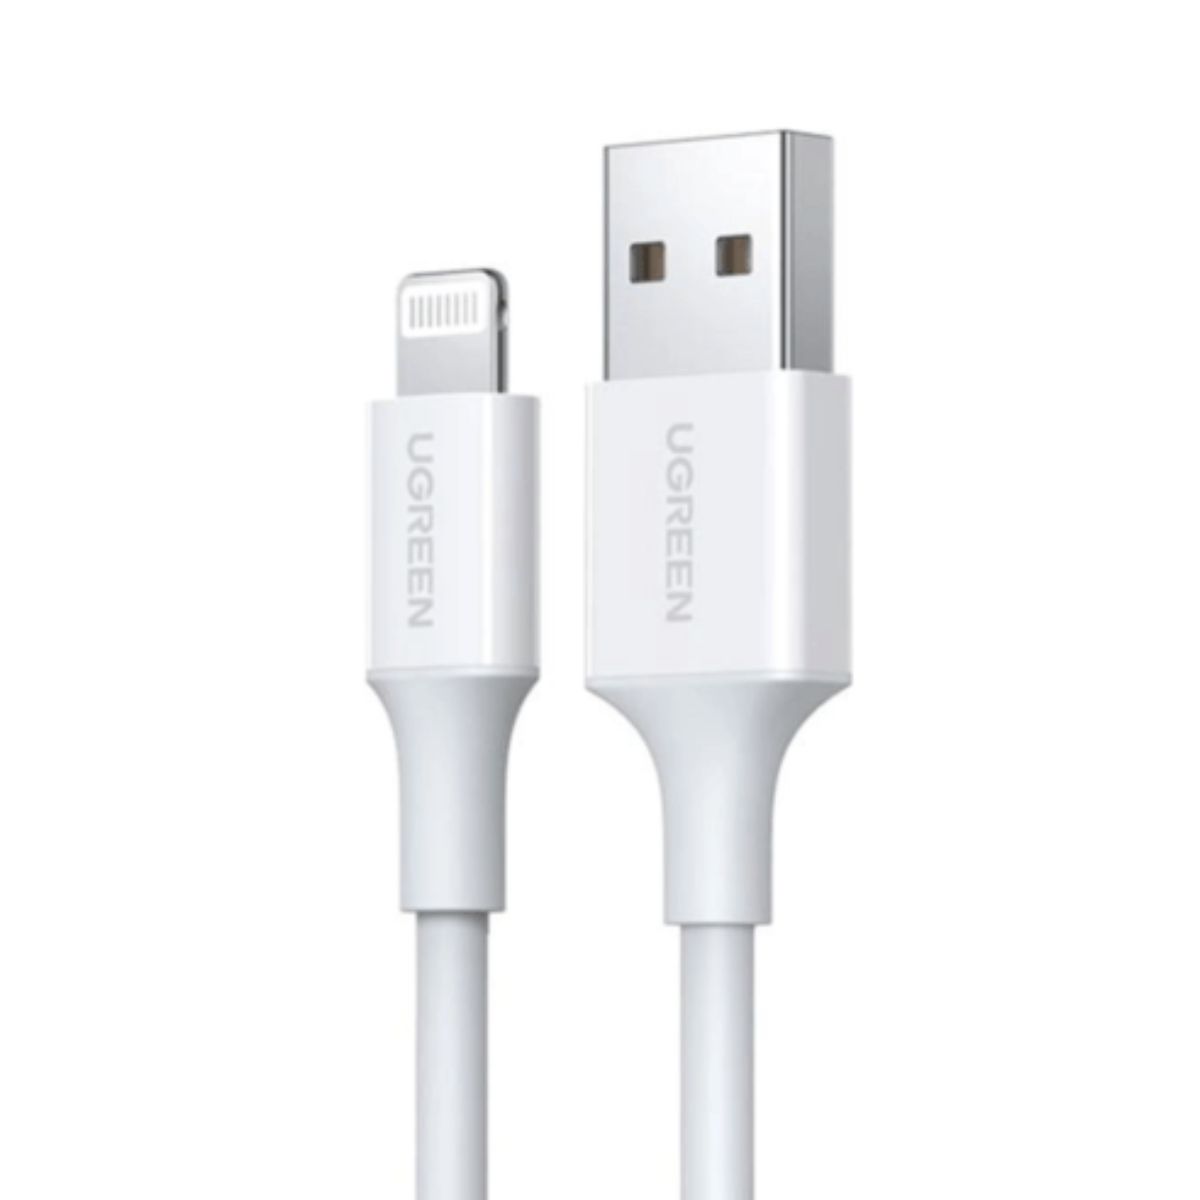 Cáp sạc dài 1.5m USB-A Male to Lightning Ugreen US155, 80315 màu trắng, mạ niken, vỏ ABS